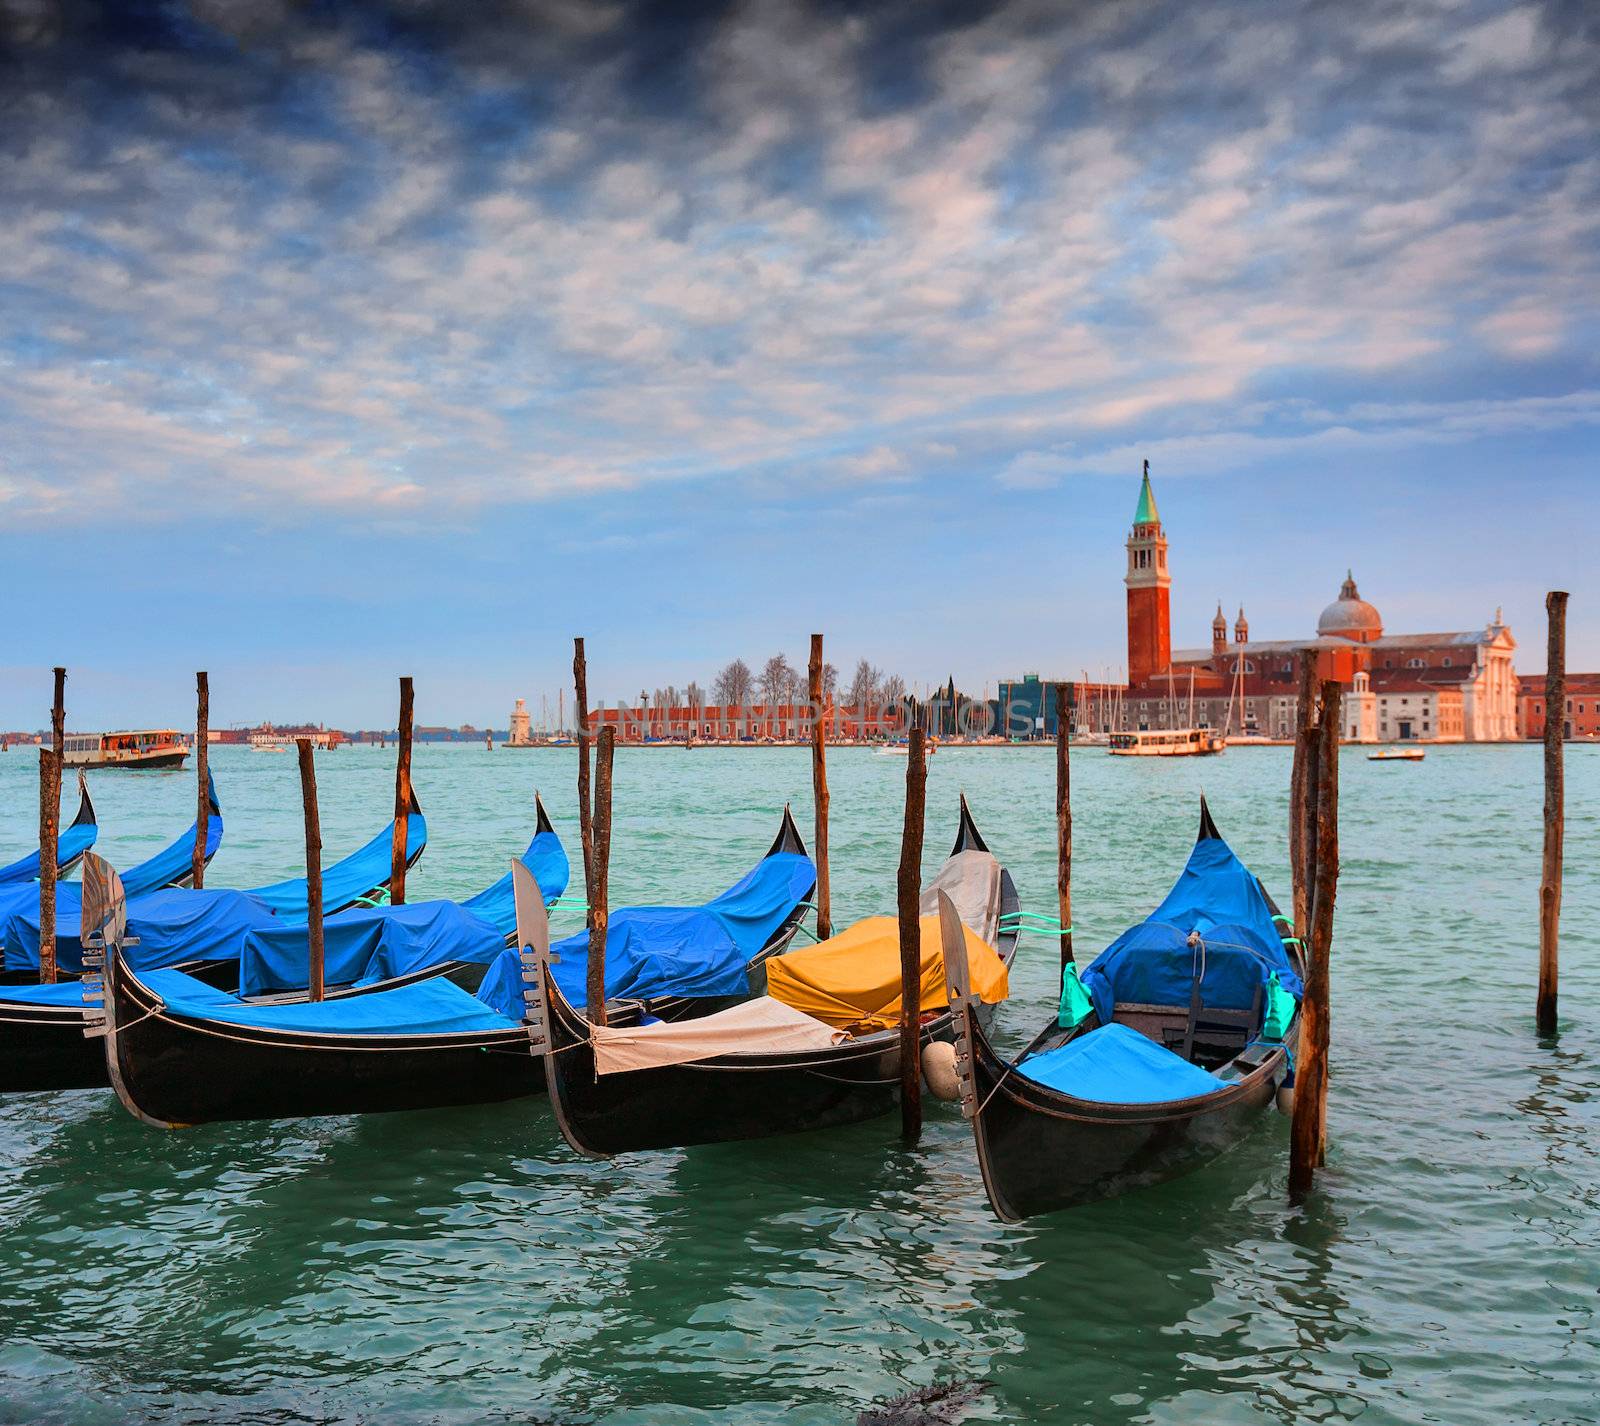 Gondolas and San Giorgio Maggiore, Venice, Italy